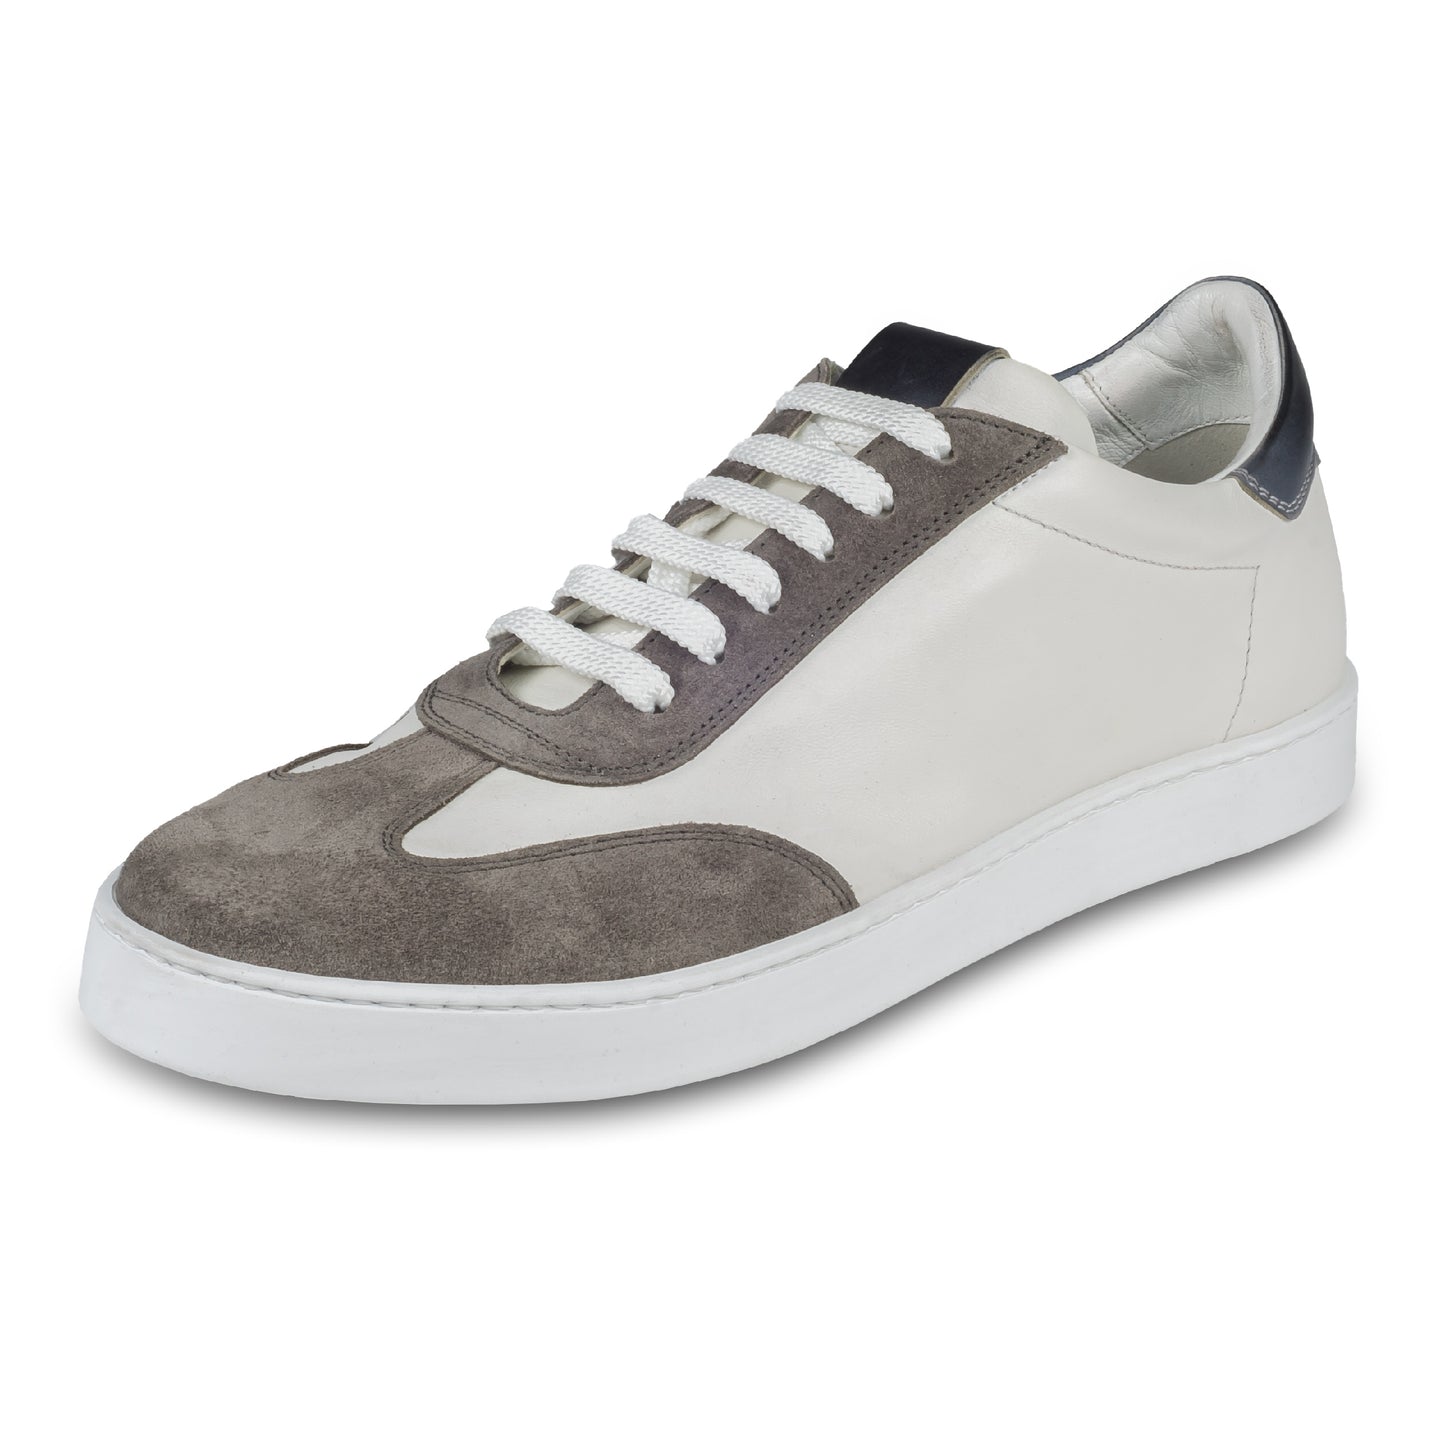 BRECOS –Herren Leder Sneaker in weiß, mit grauem Veloursleder an der Spitze und blauer Ferse, Durchgenäht. Schräge Ansicht linker Schuh. Bei Sisento.